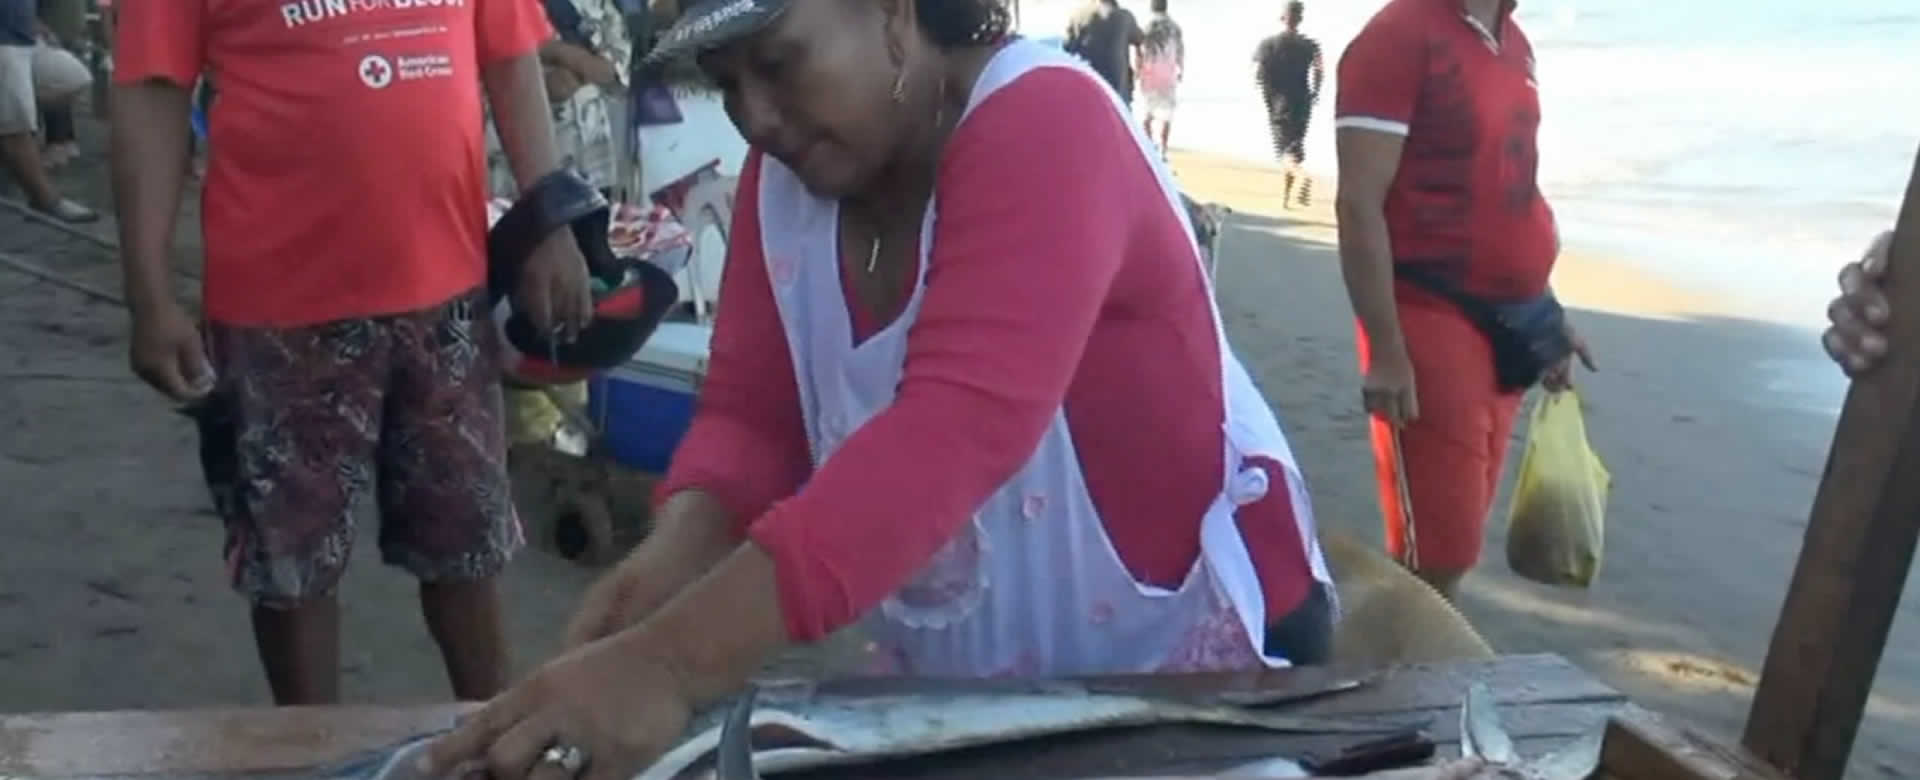 Comerciantes de mariscos se muestran indignados ante noticias falsas por la Marea Roja